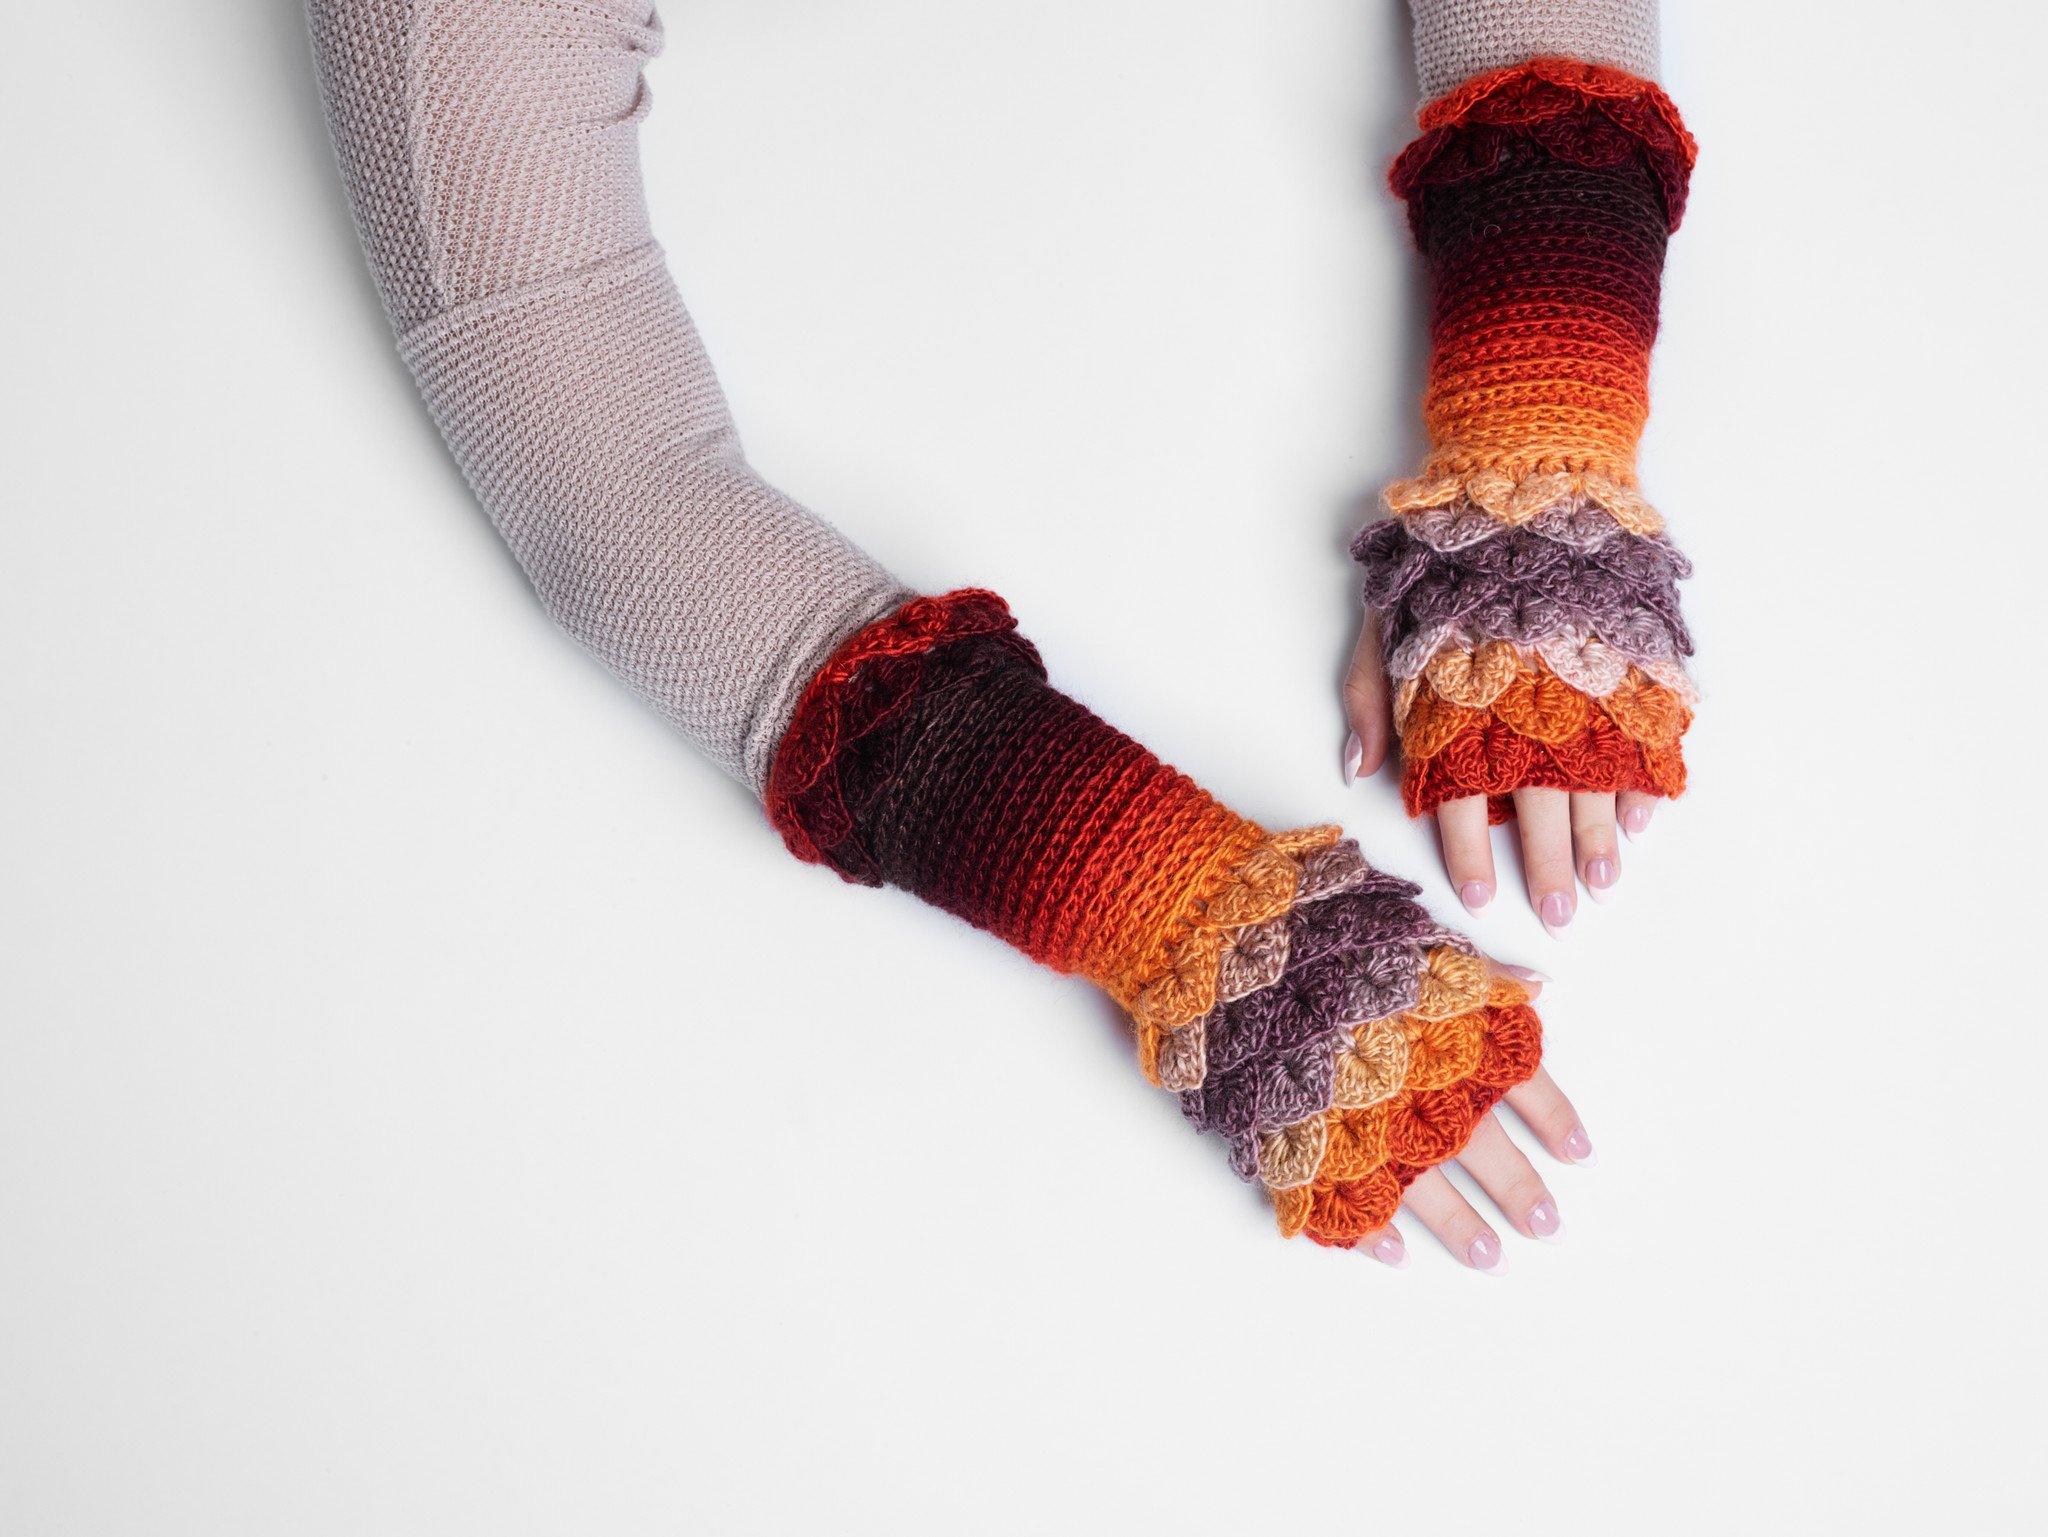 Mitts (fingerless gloves) to Crochet / Cross Point 